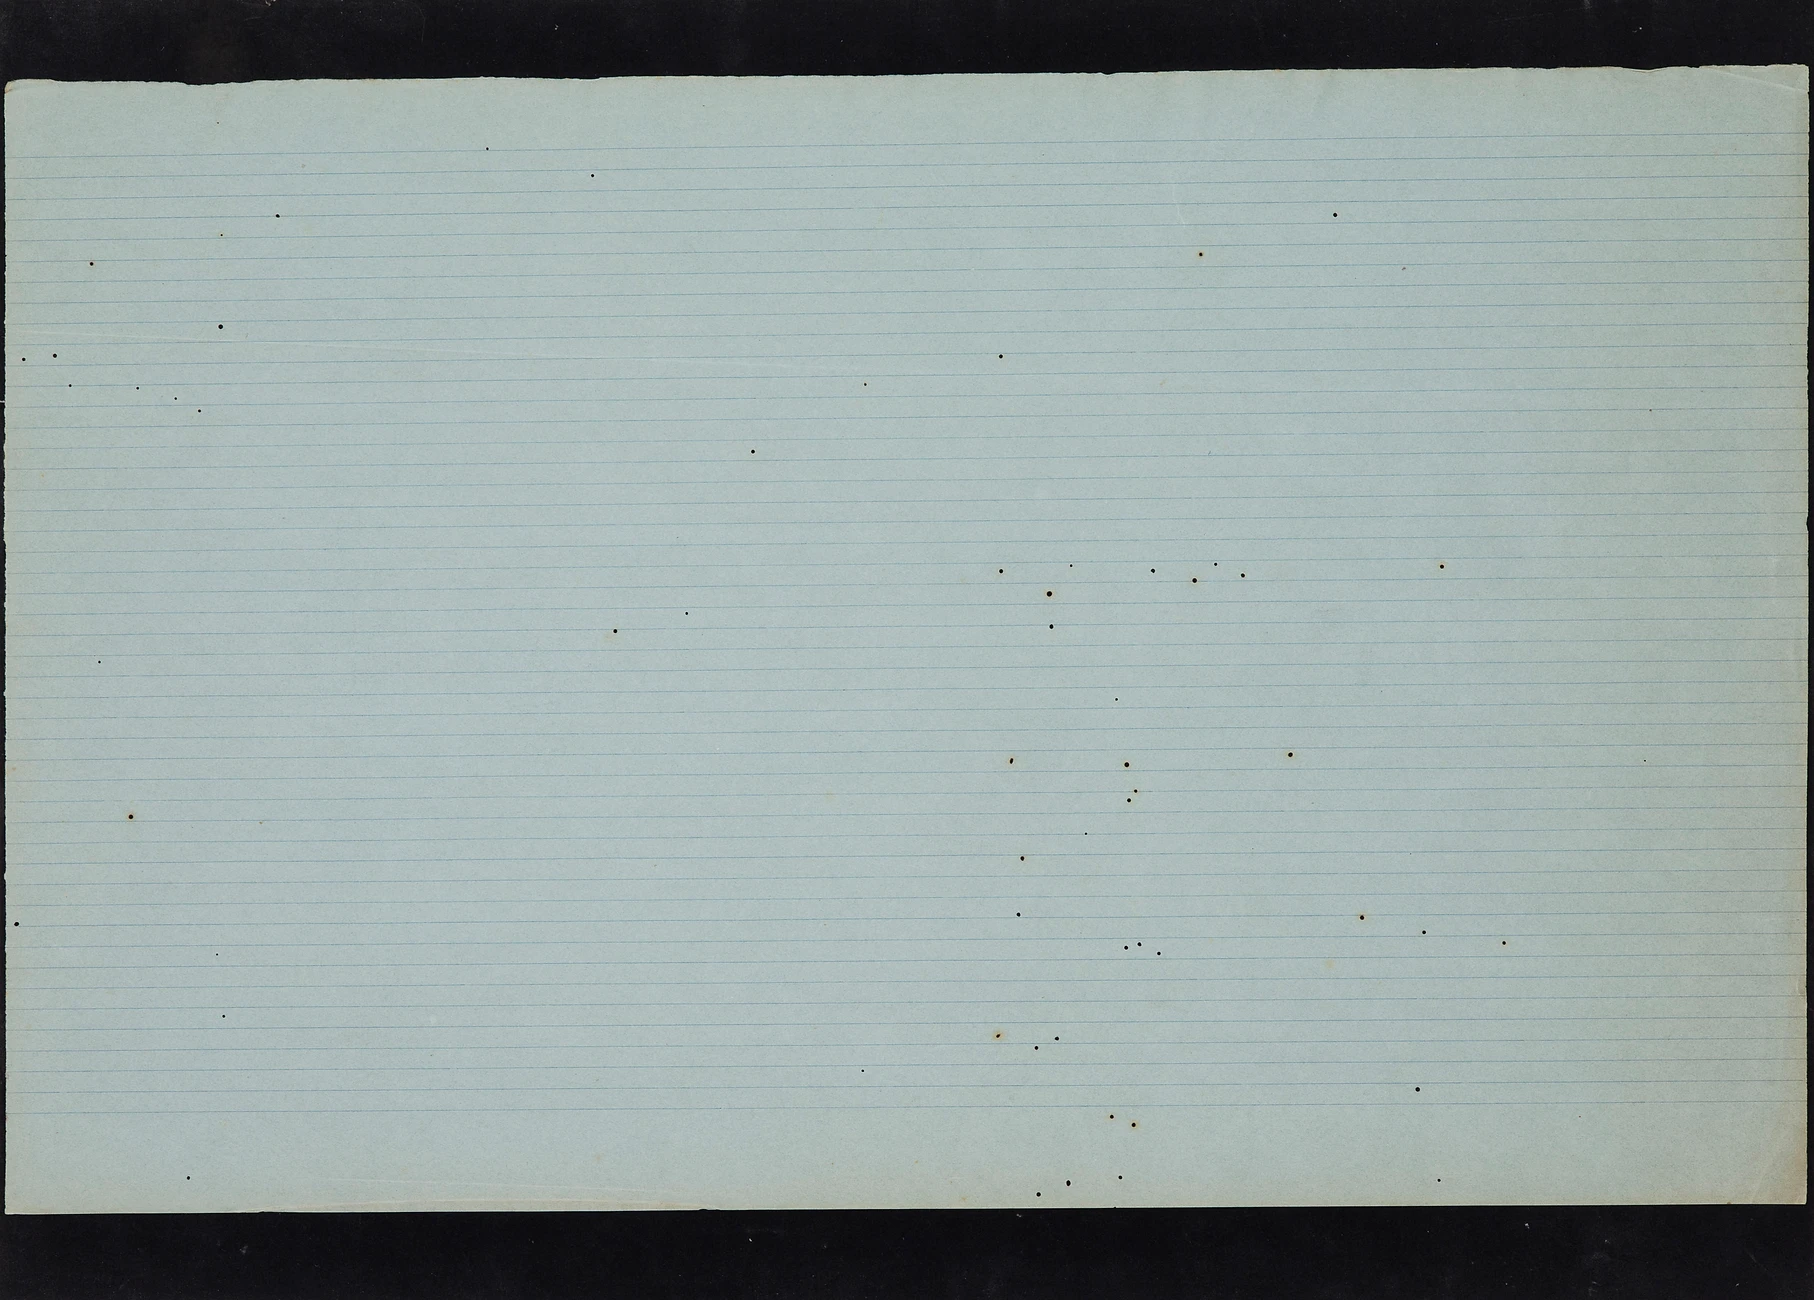 #5 Preparar papéis, Prado, papel 25 linhas com marca de água -PRADO- com furos de Lepisma saccharina colado em papel de veludo, 49,5x69,5cm, 2015-Rui-Horta-Pereira